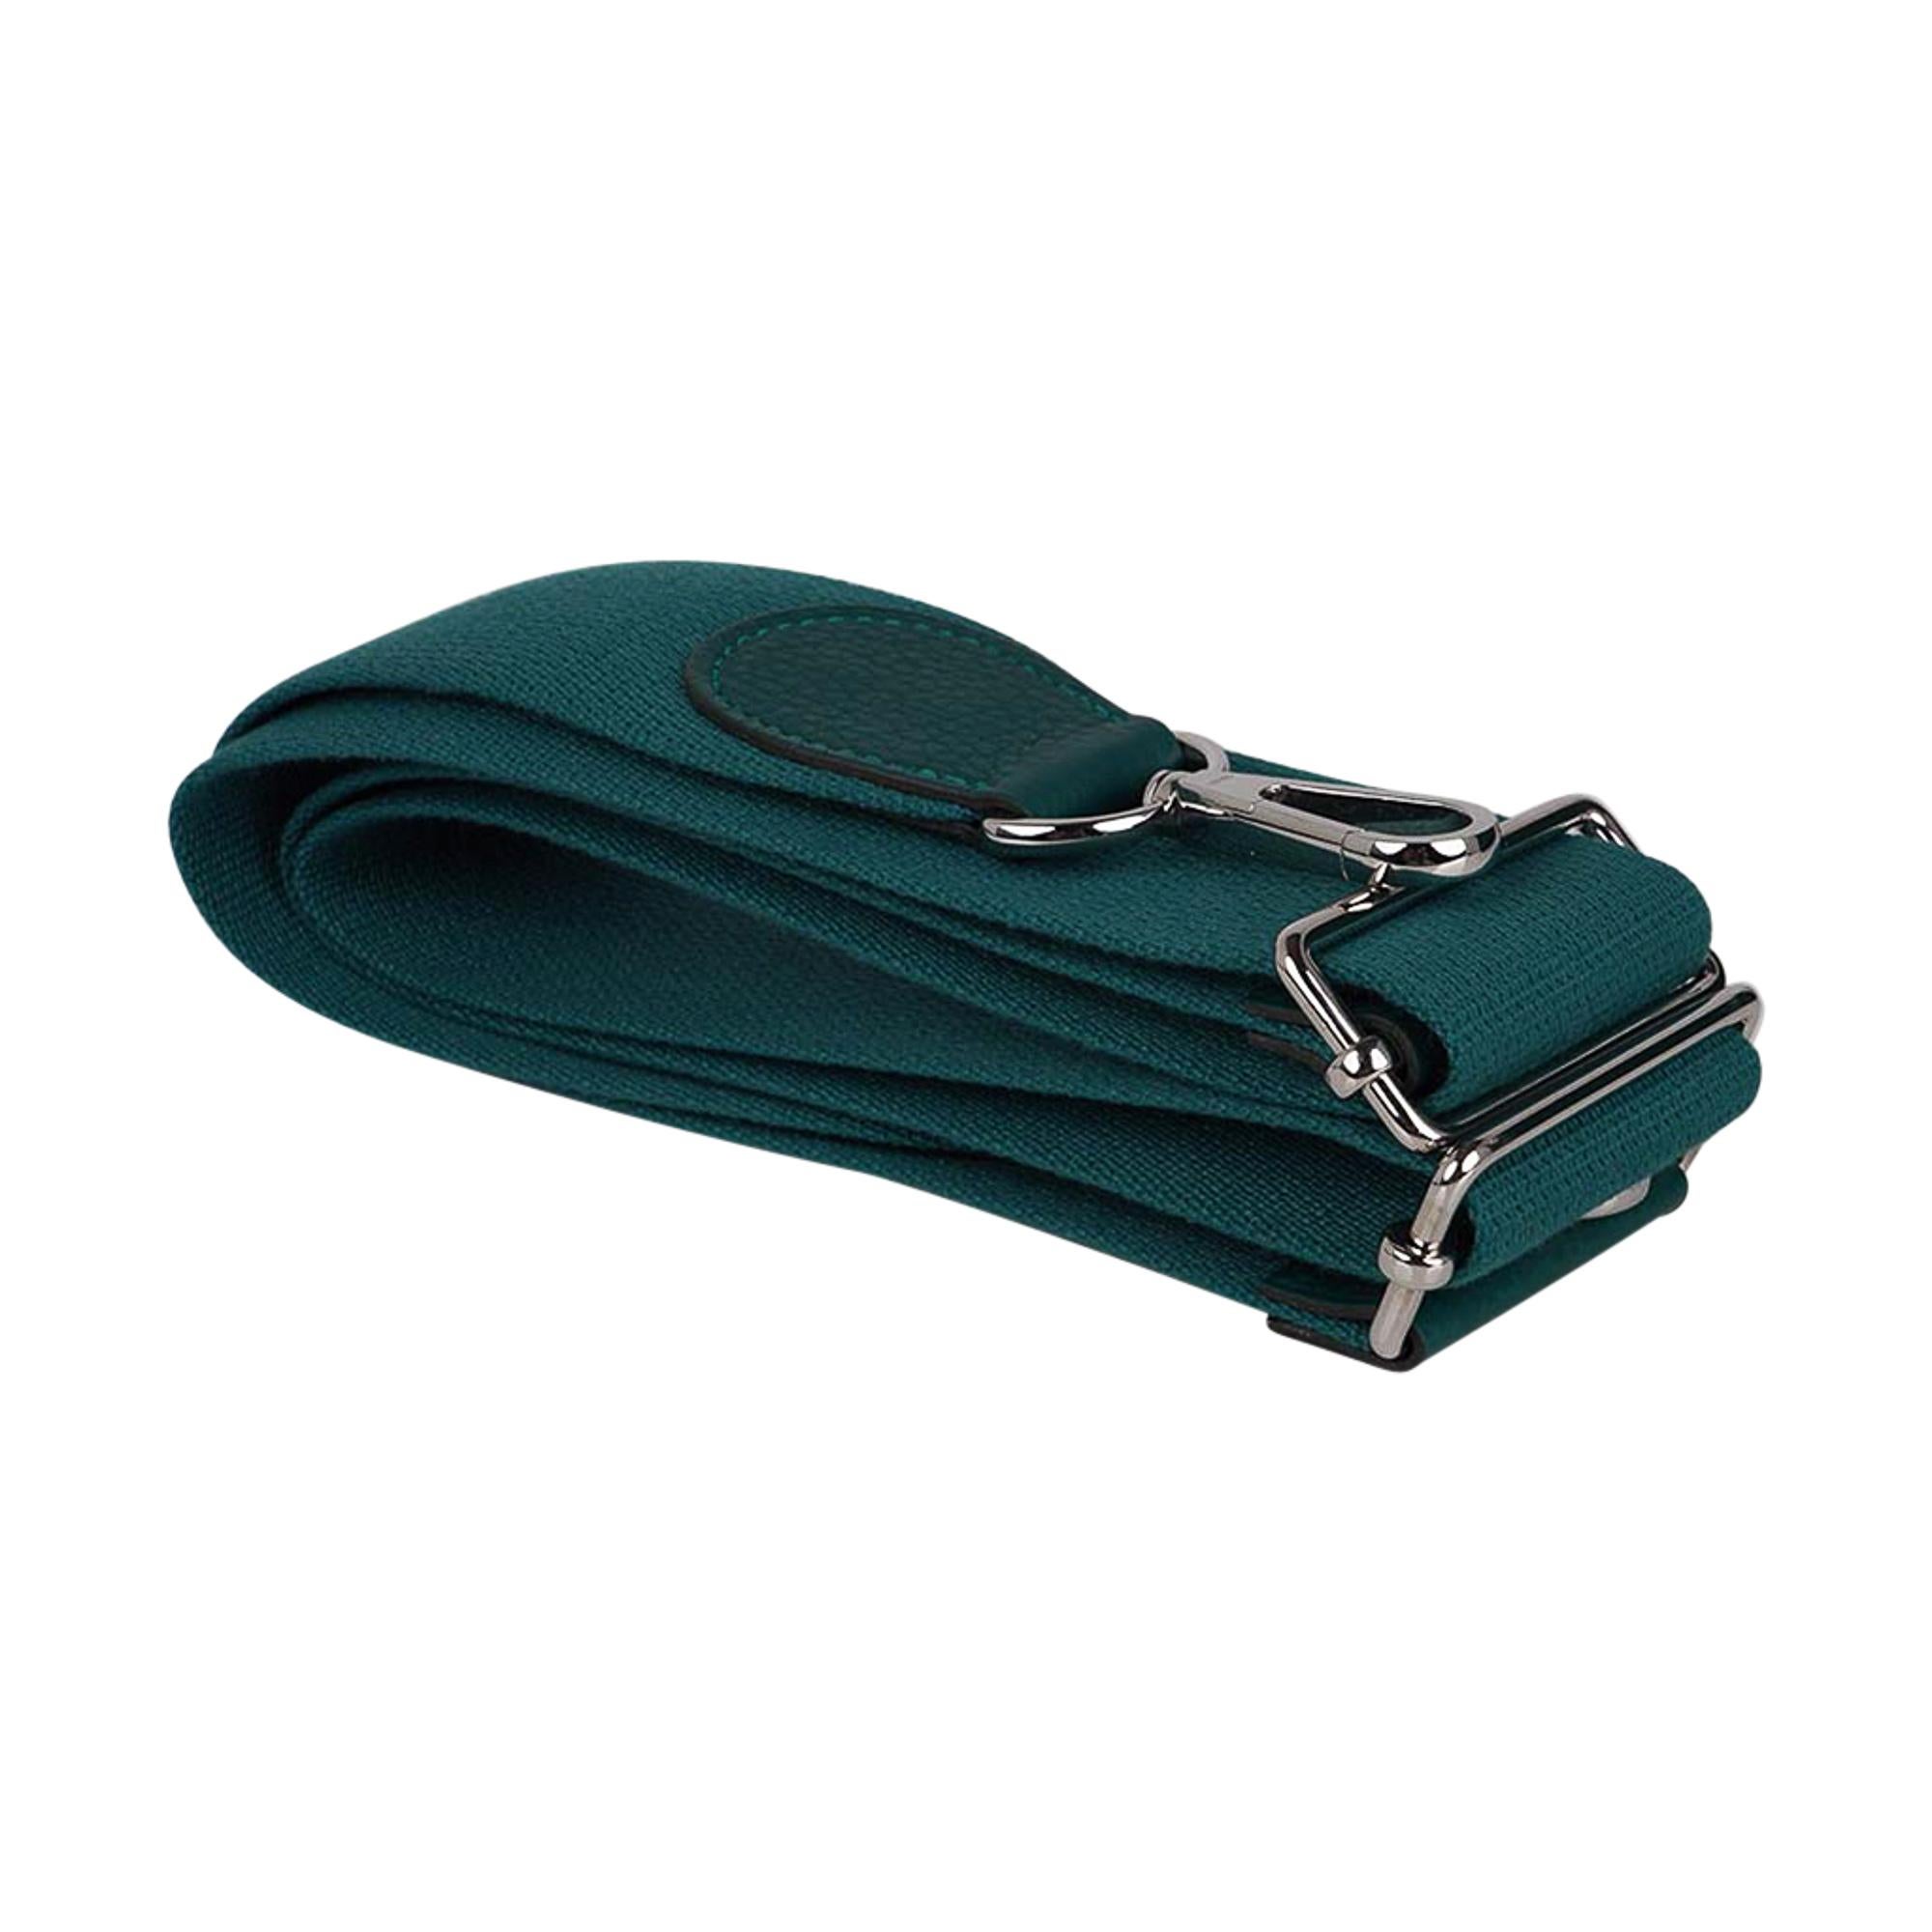 Hermes Evelyne PM Bag Malachite Clemence Leather Palladium Hardware New w/Box 2